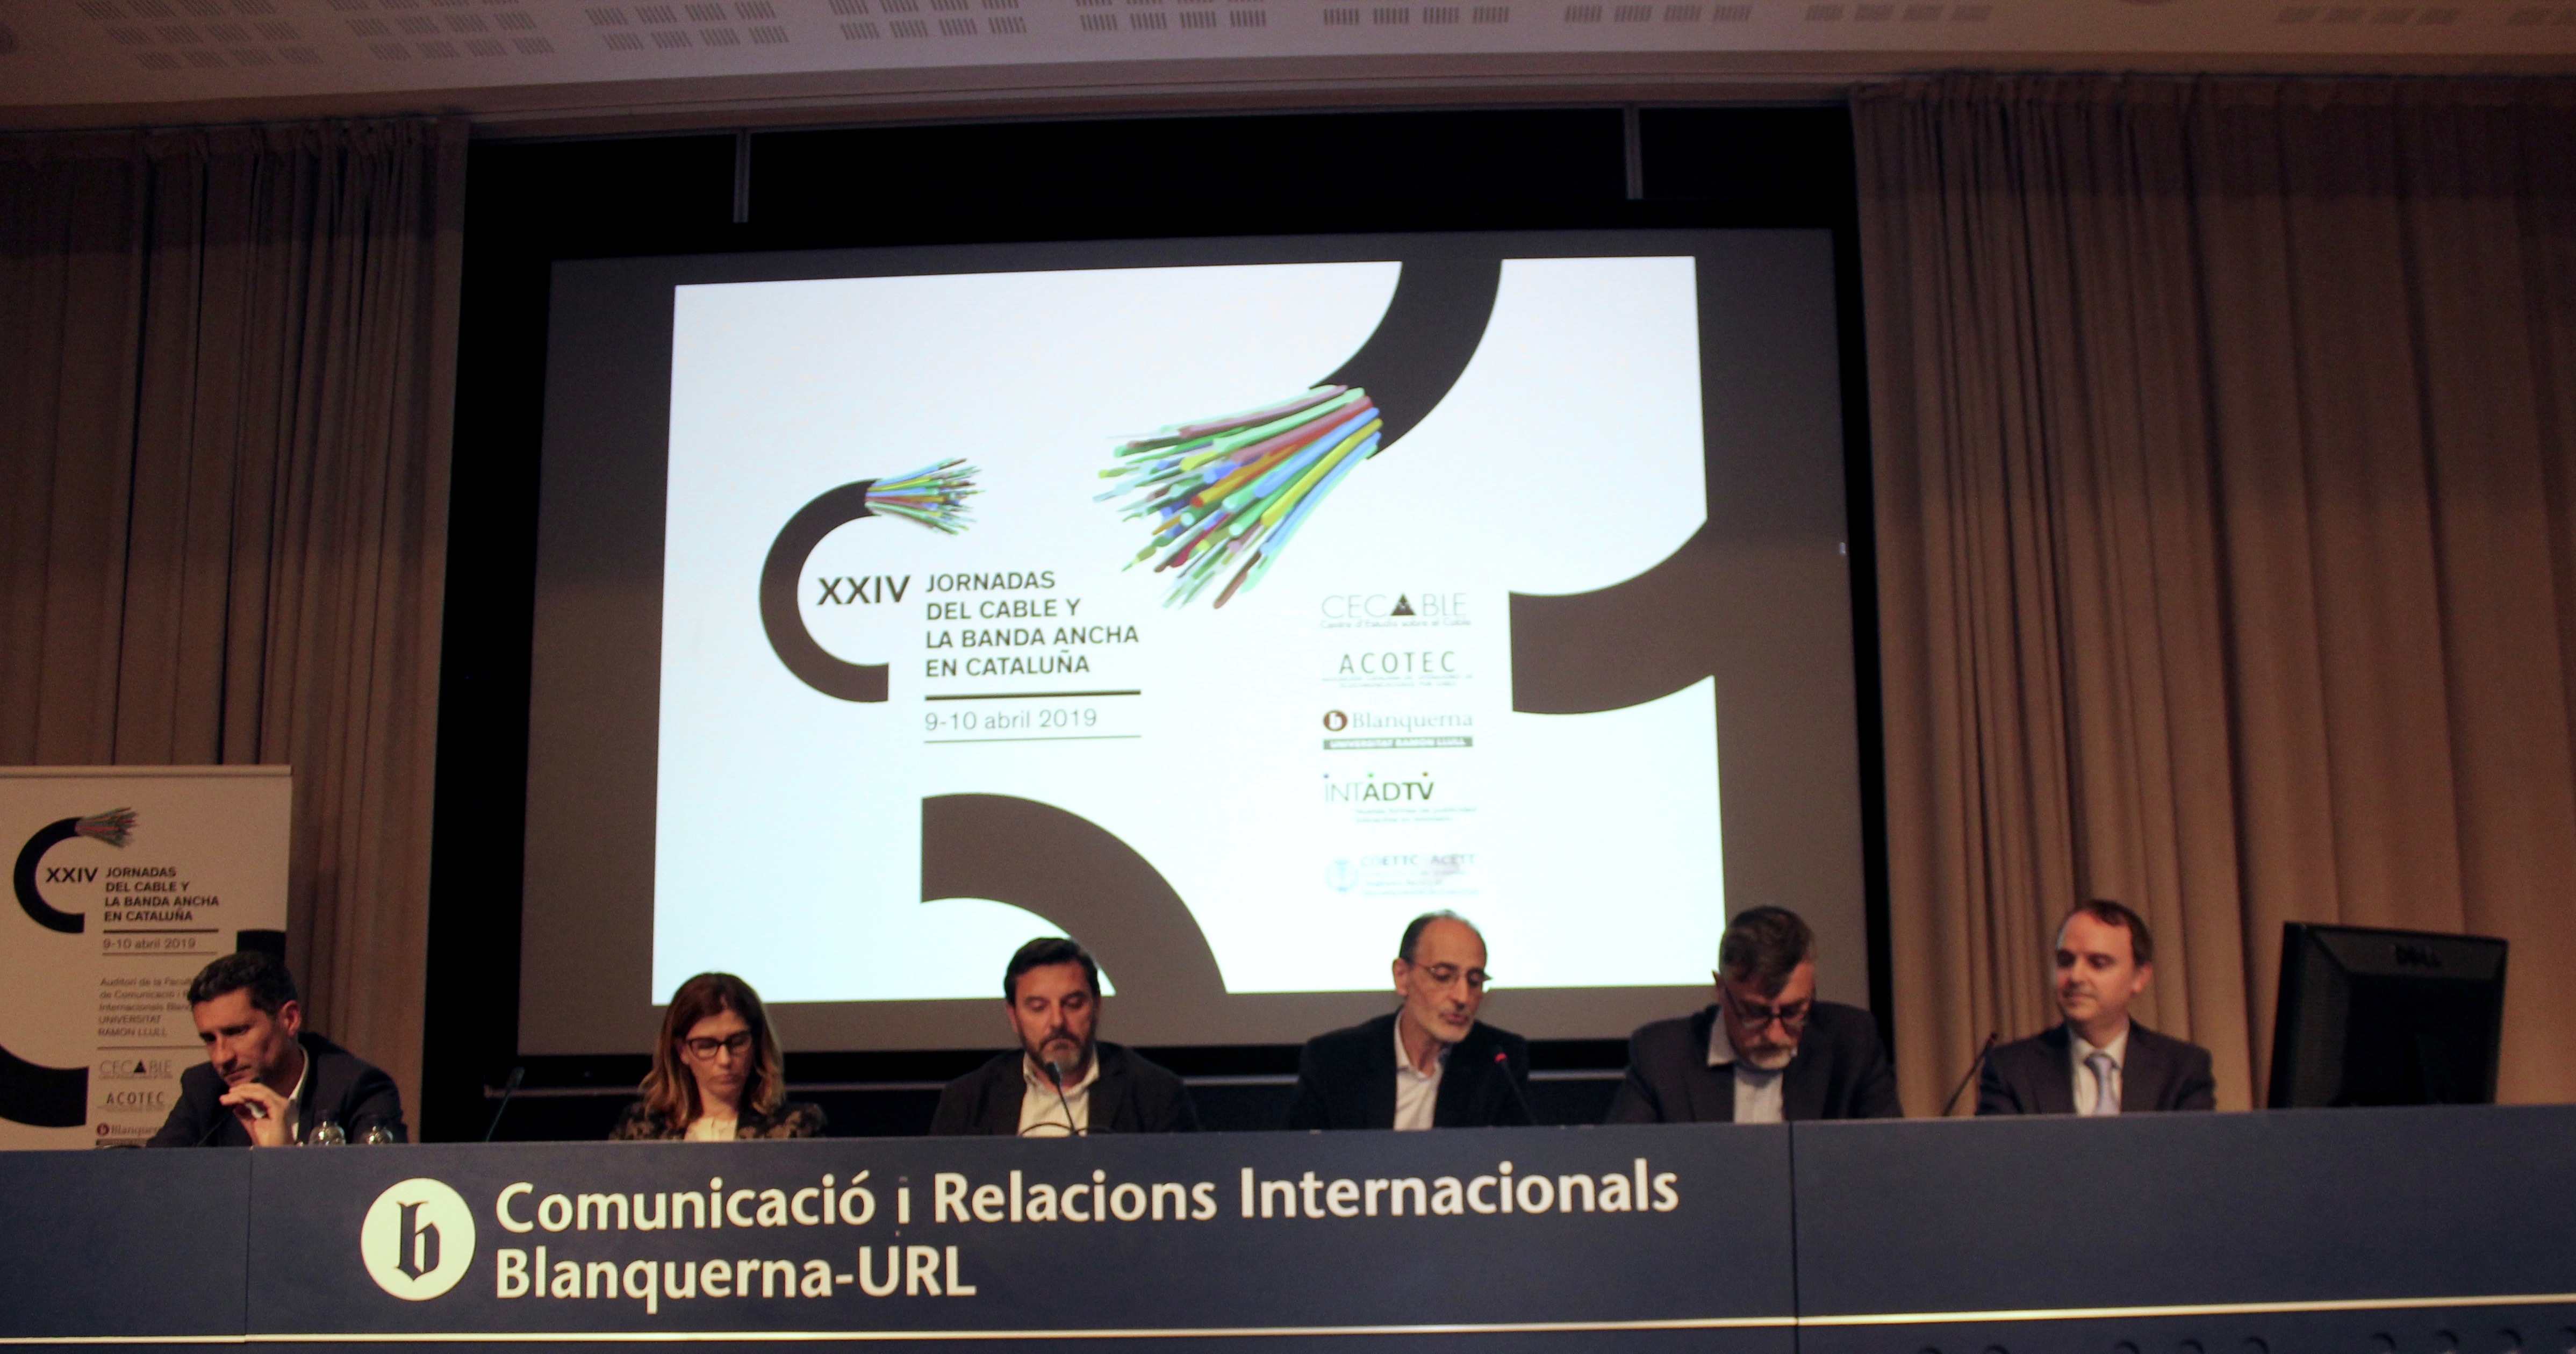 Debat sobre la competència al mercat de les telecomunicacions a Catalunya